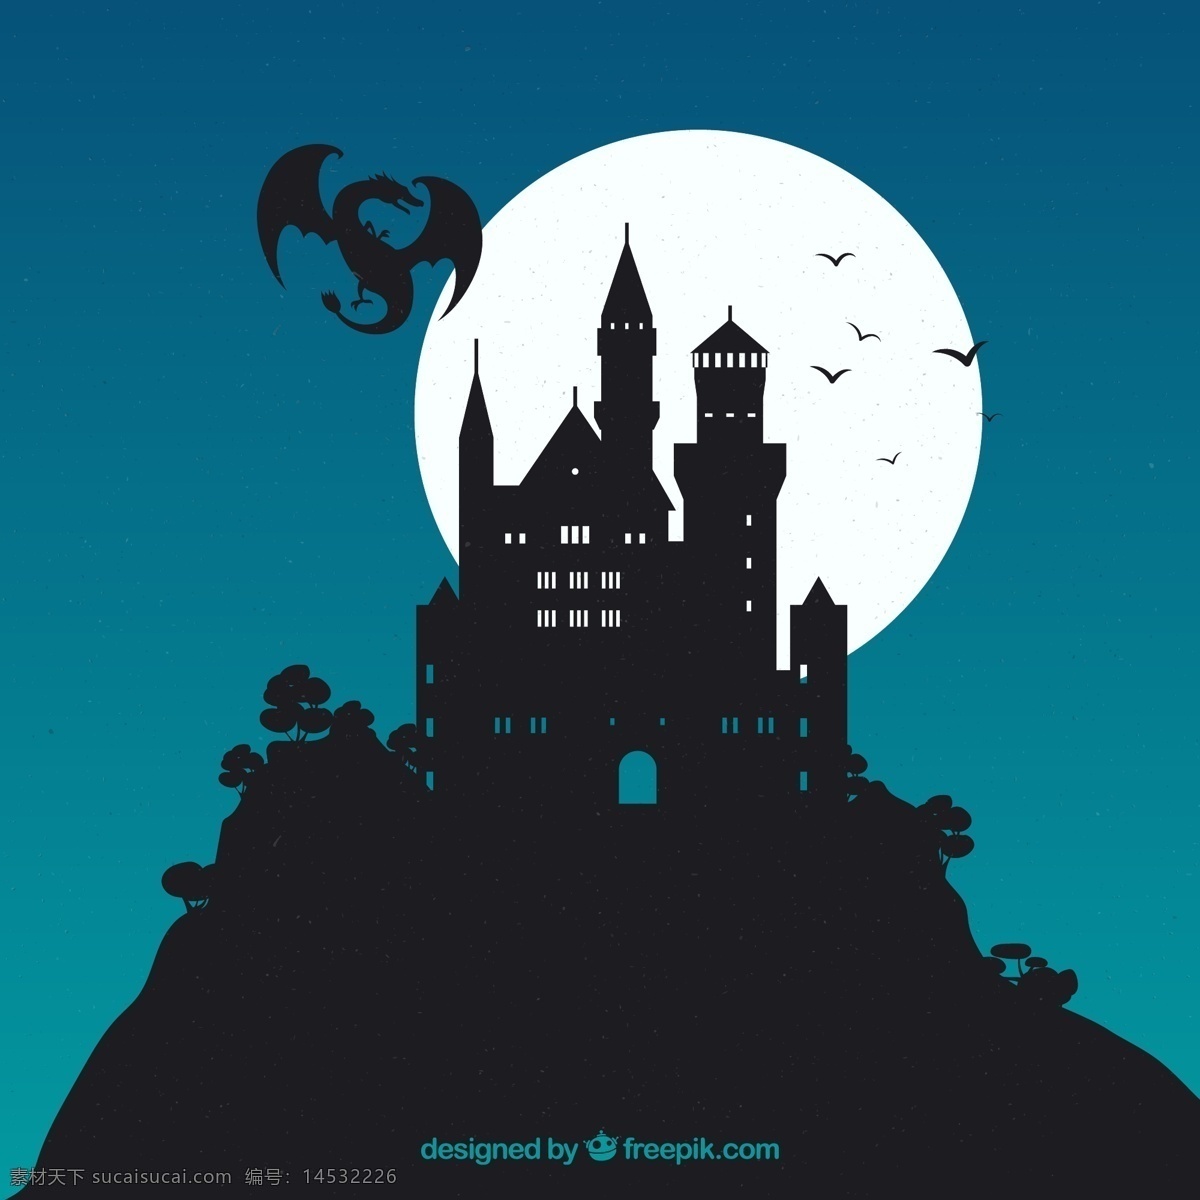 创意 月夜 古堡 龙 剪影 树木 月亮 山 欧洲 夜晚 蝙蝠 城堡 悬崖 动漫动画 风景漫画